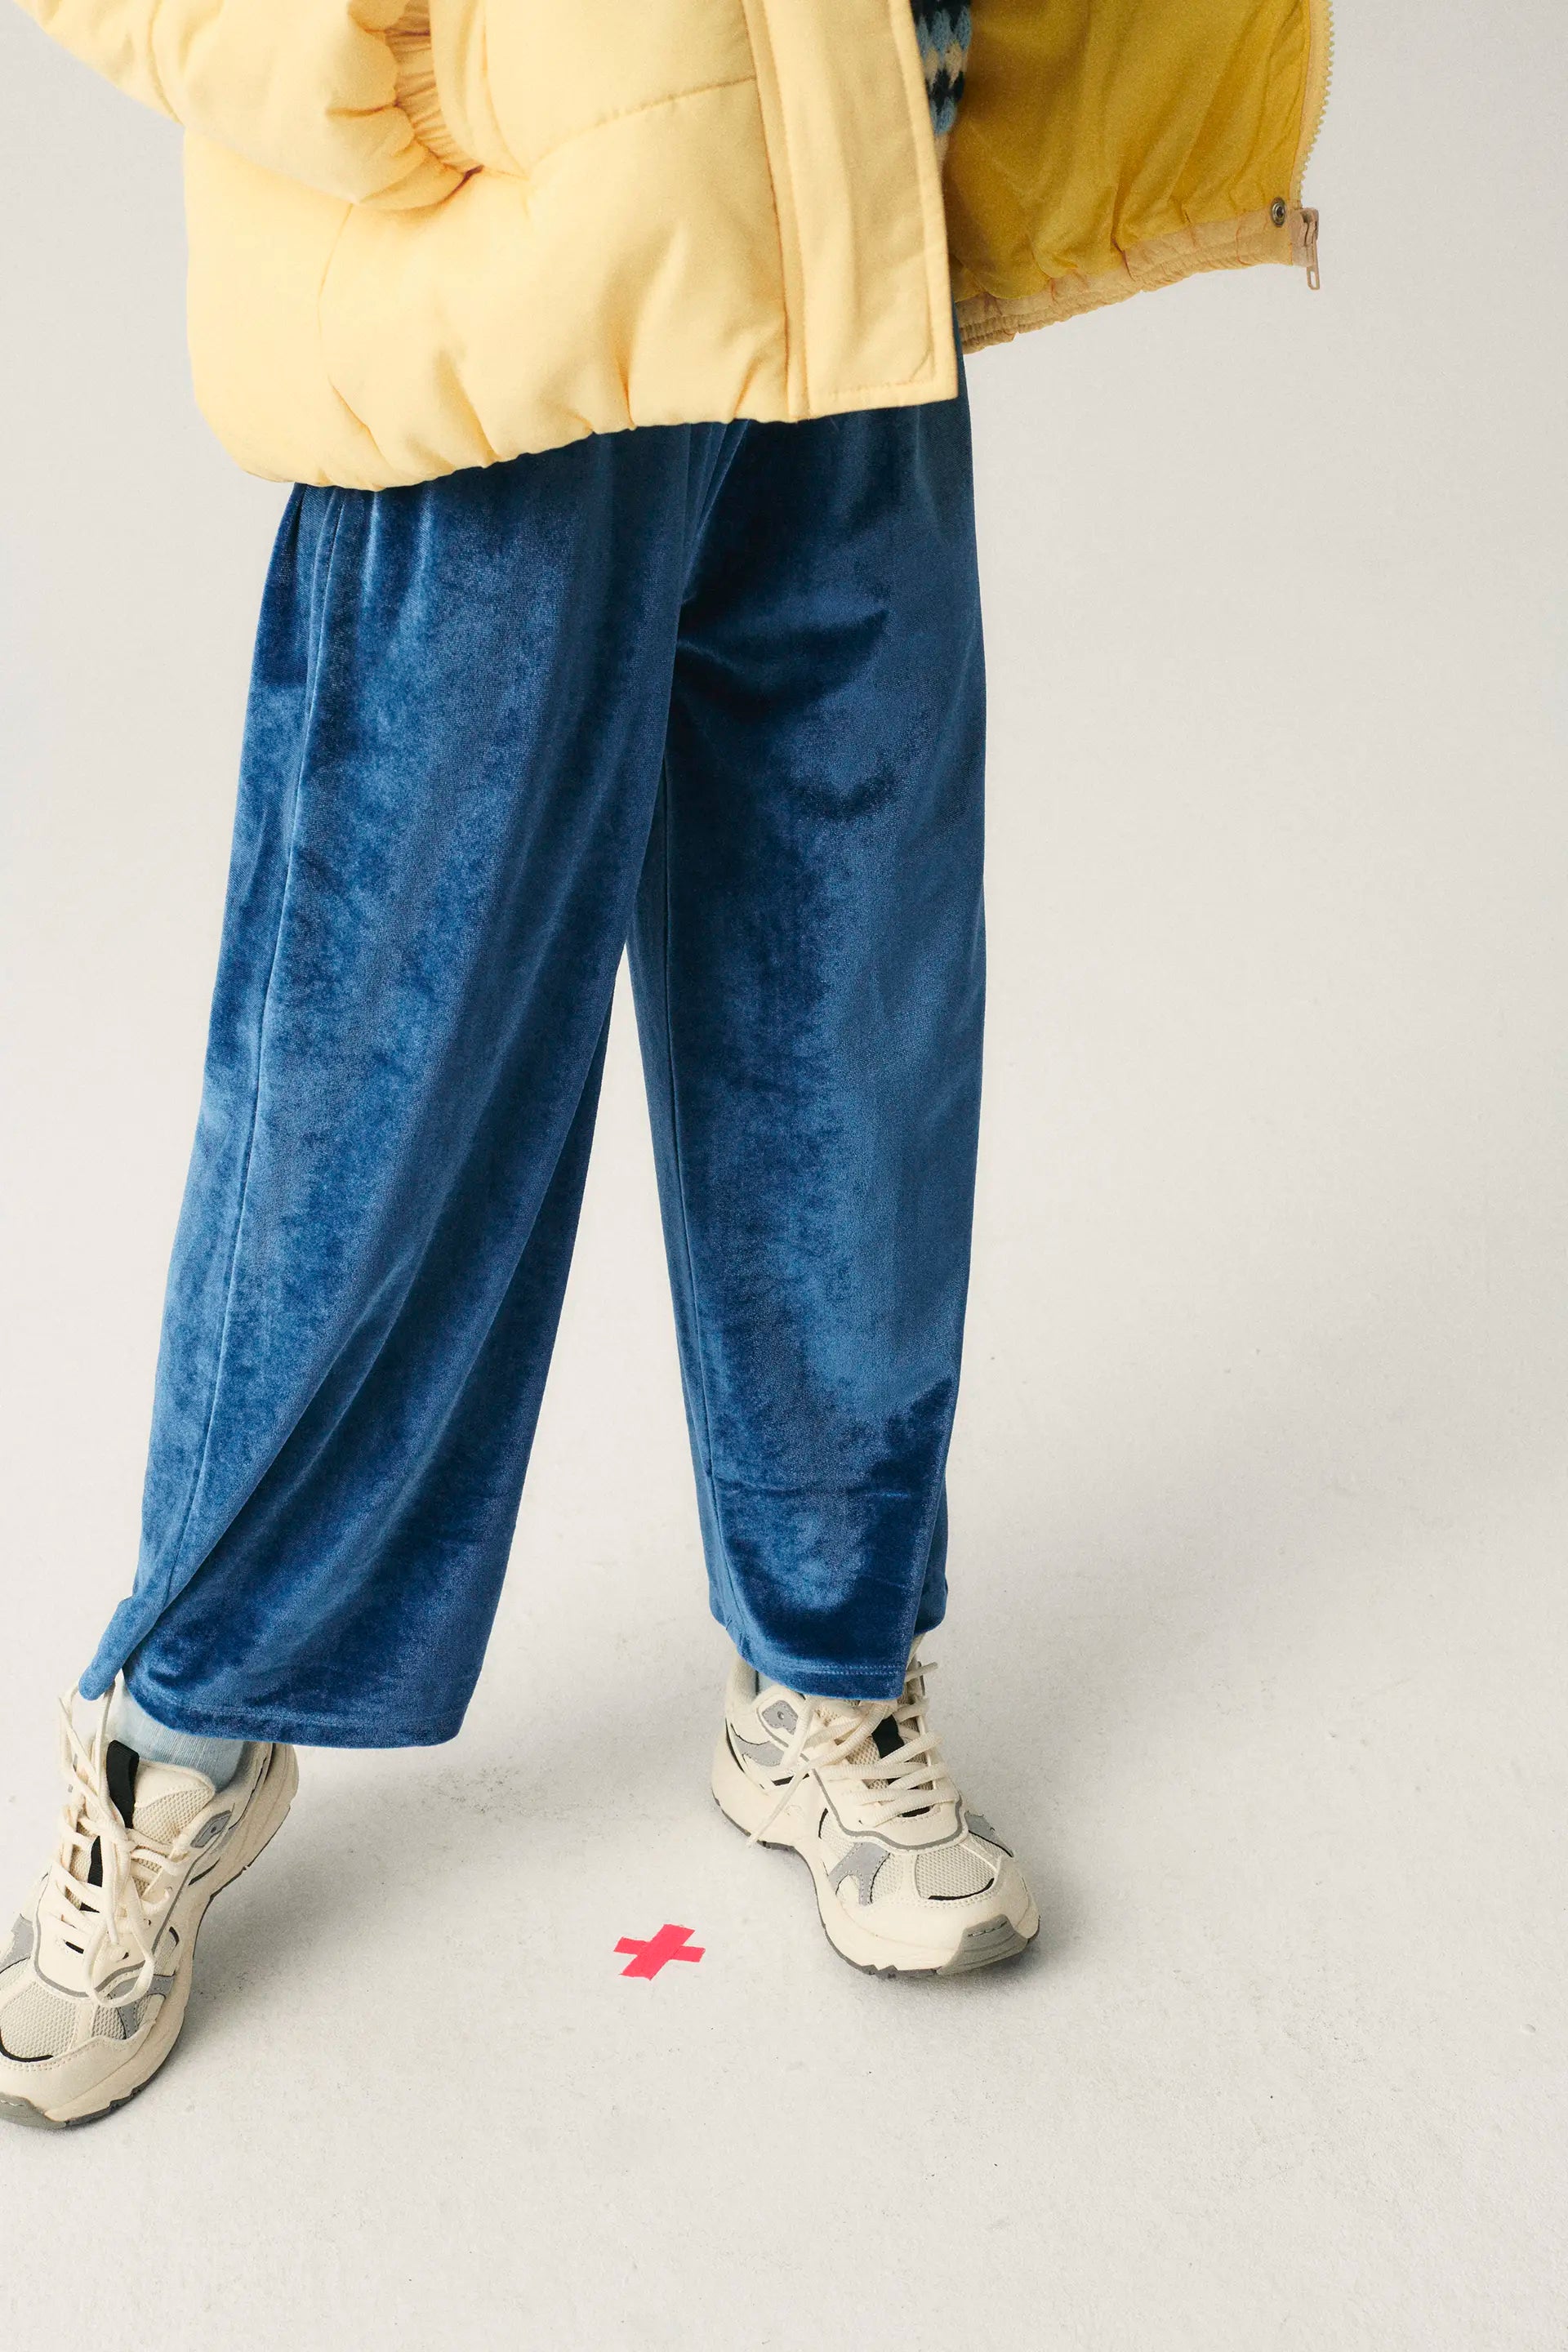 Las mejores ofertas en Pantalones de terciopelo azul sin marca